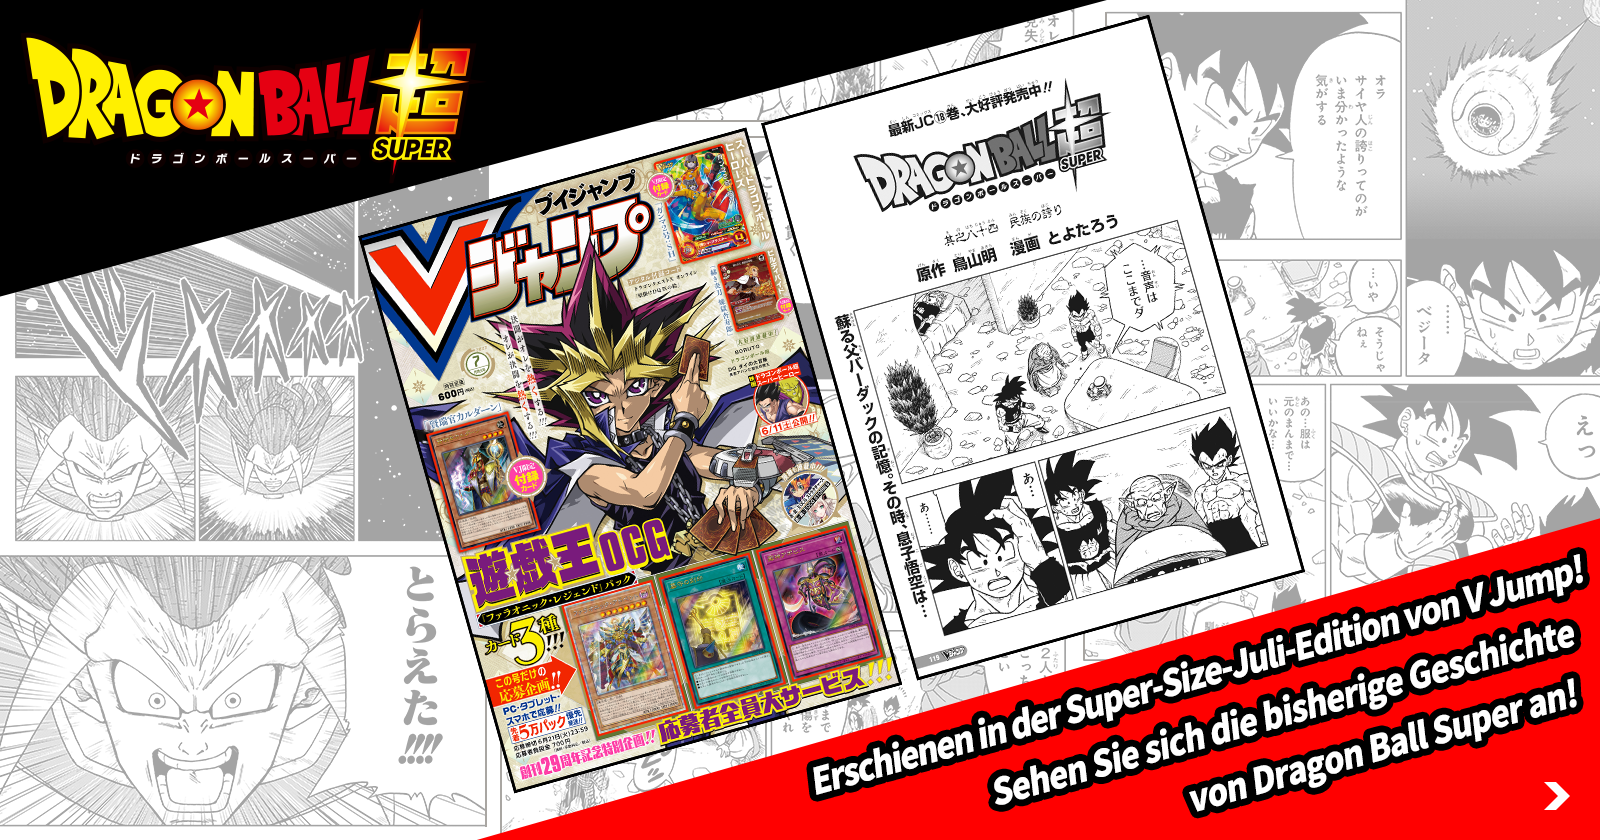 Veröffentlicht in der supergroßen Juli-Ausgabe von V Jump! Sieh dir die bisherige Geschichte in Dragon Ball Super an!